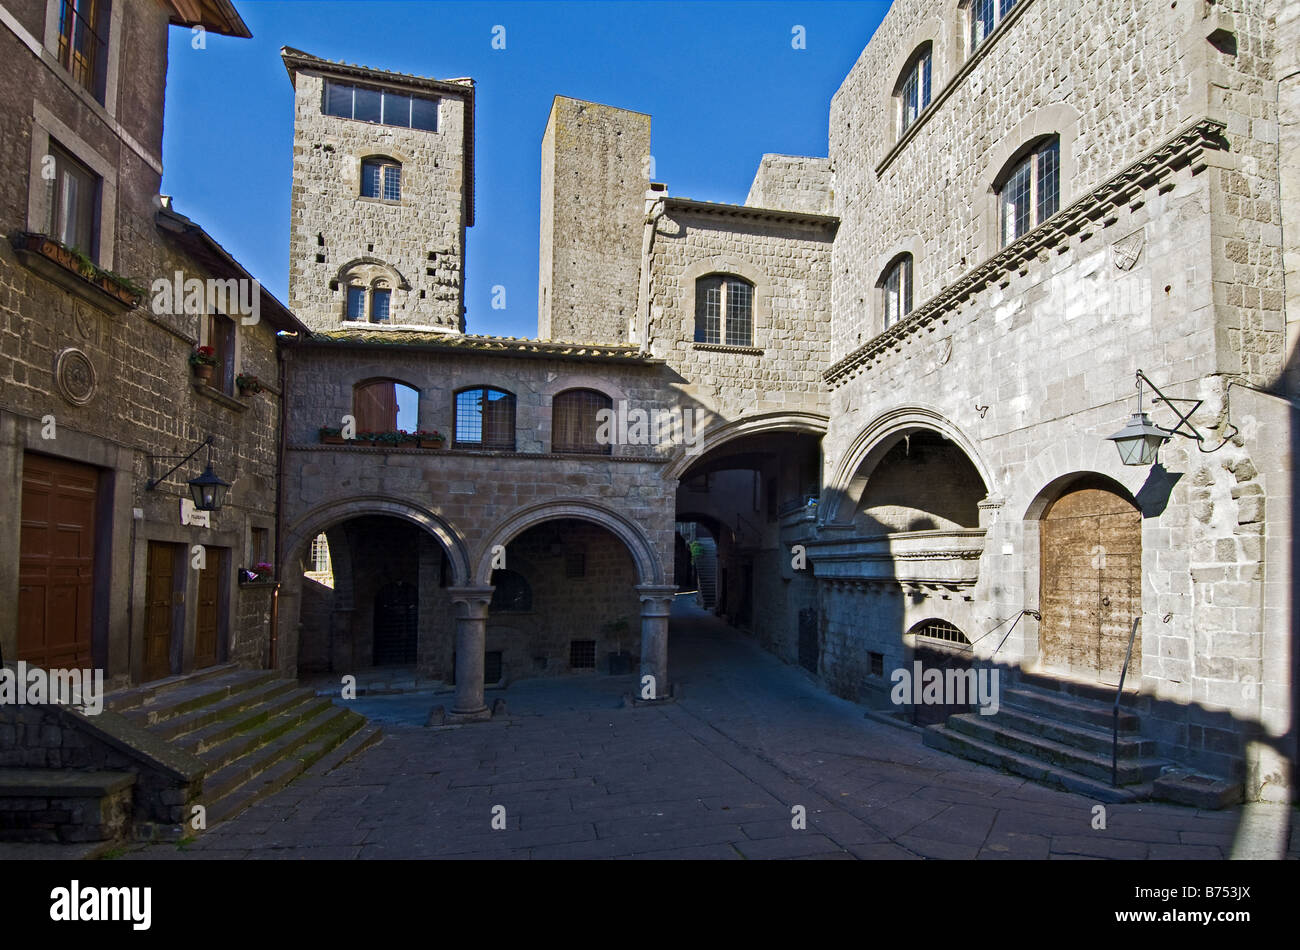 El casco medieval de San Peregrine en Viterbo en Italia Foto de stock